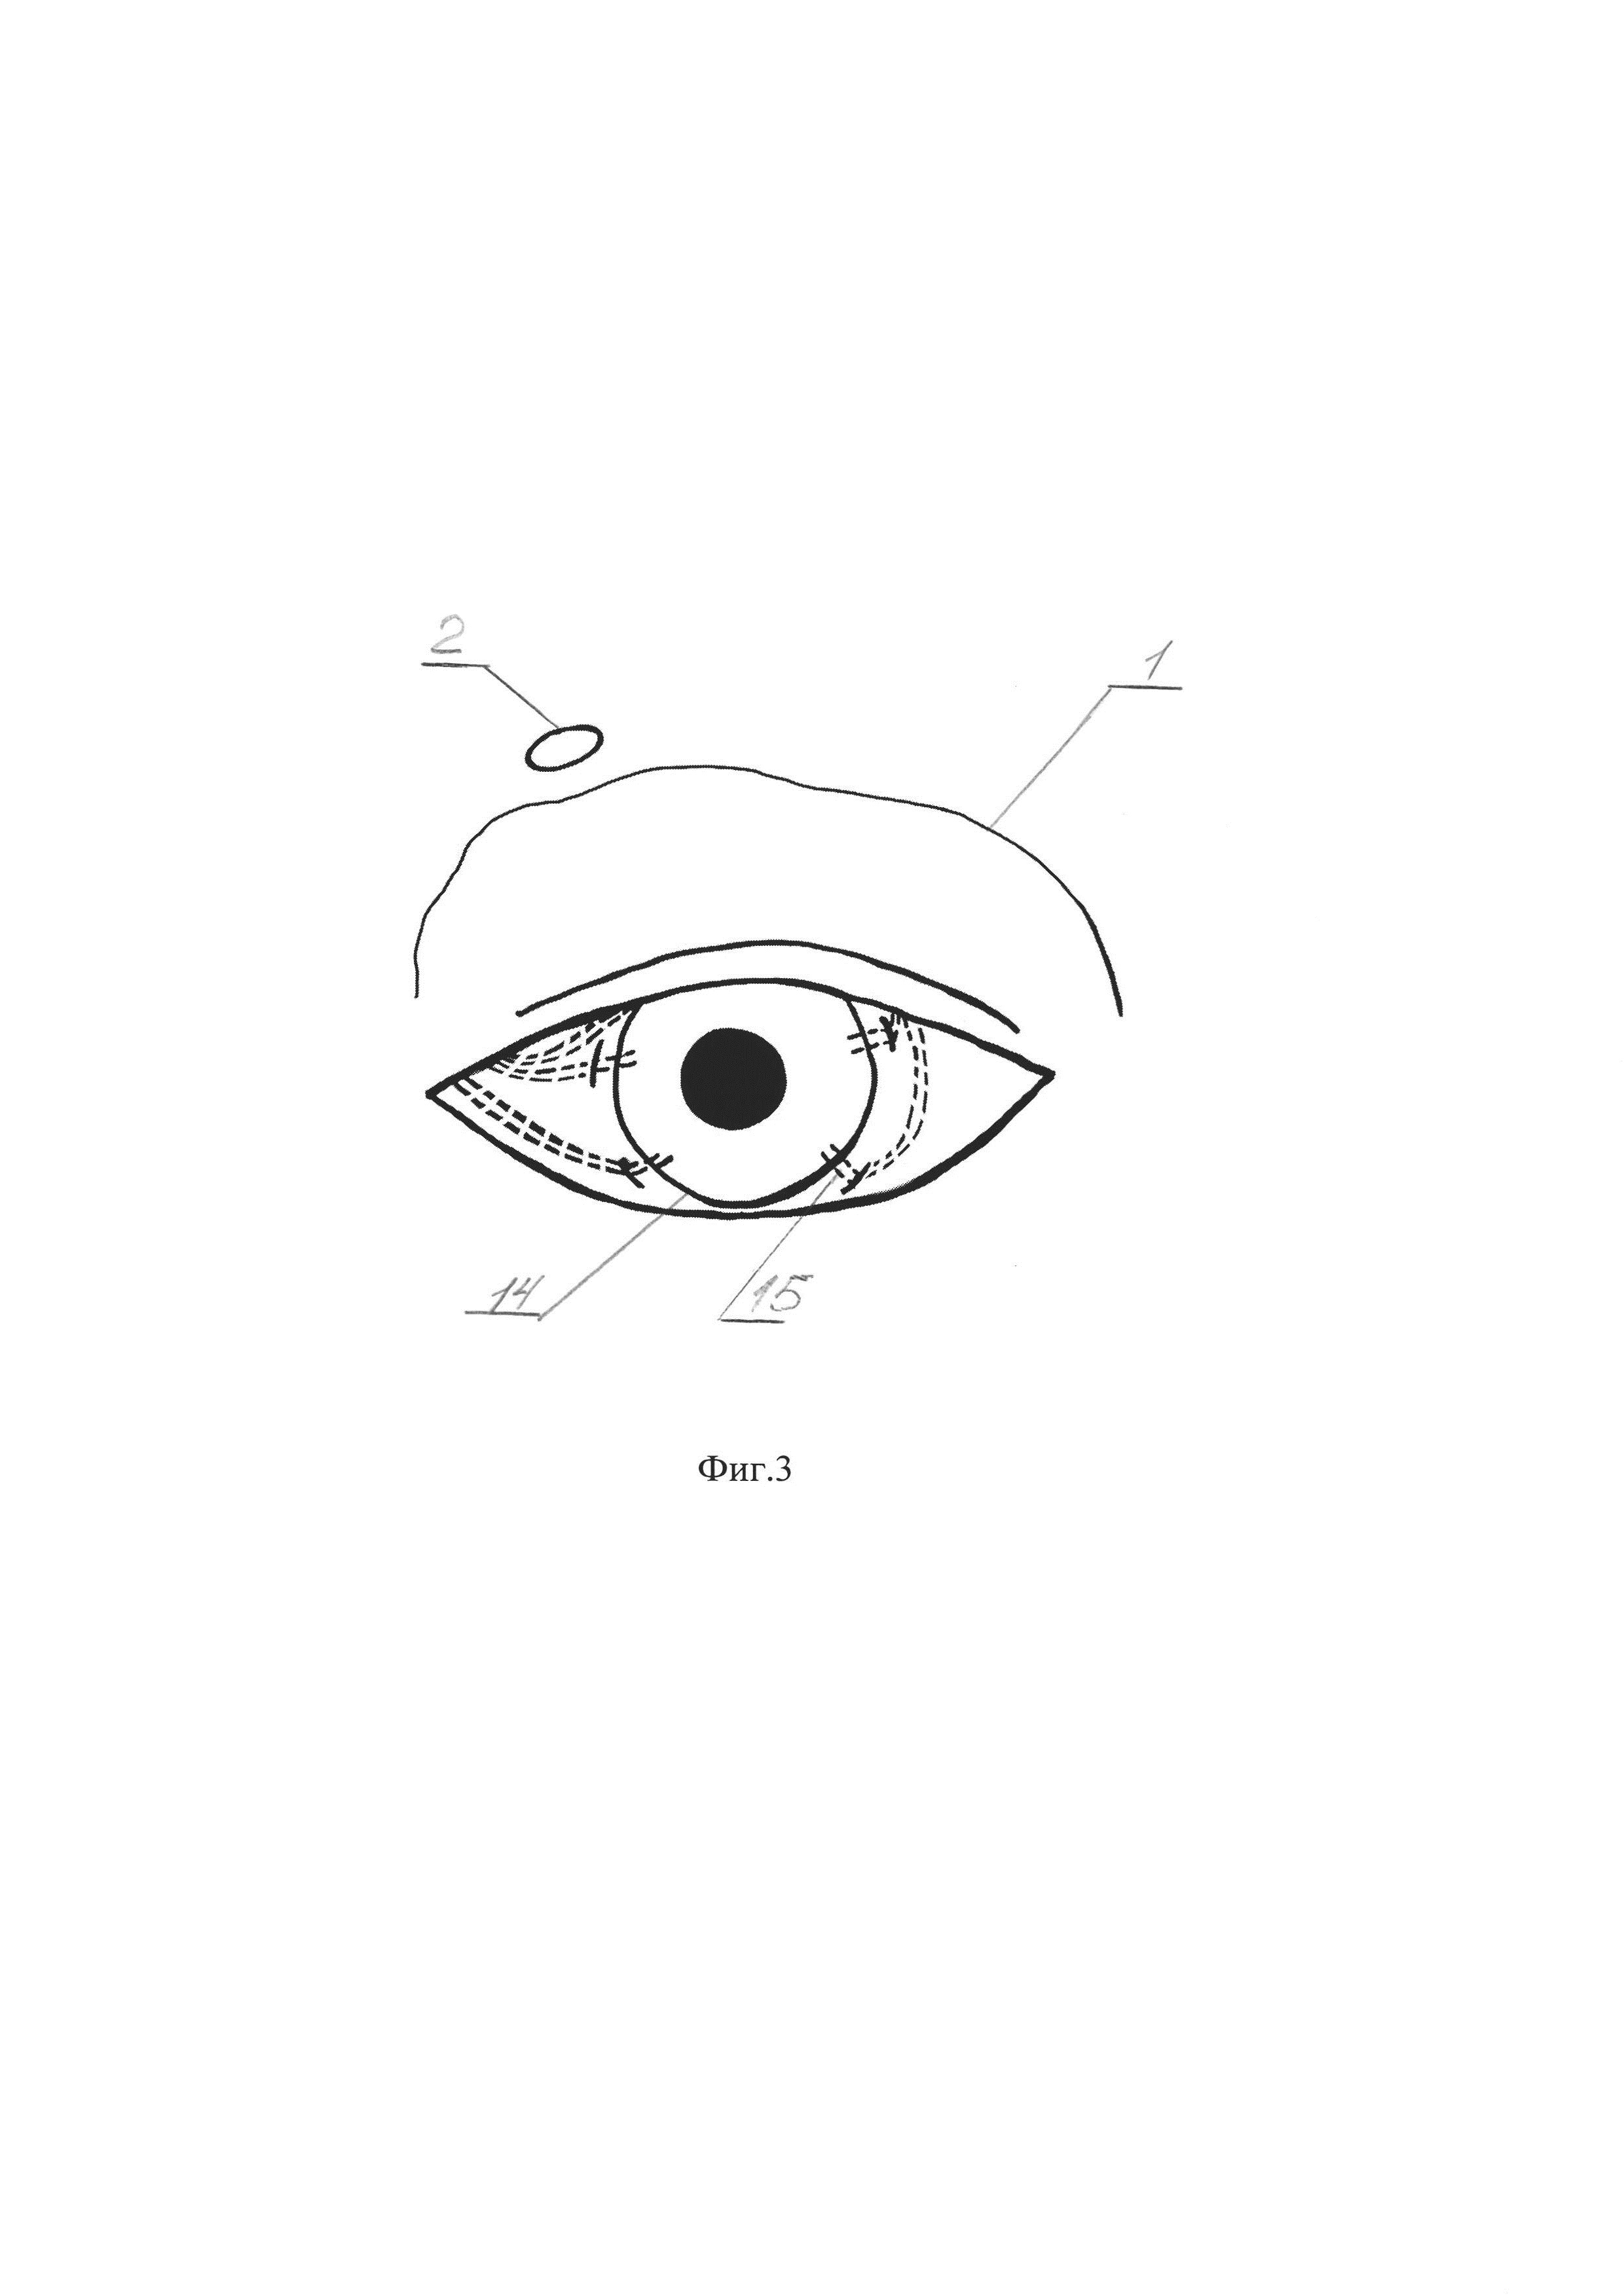 Способ восстановления трофики роговицы глаза при нейротрофической кератопатии